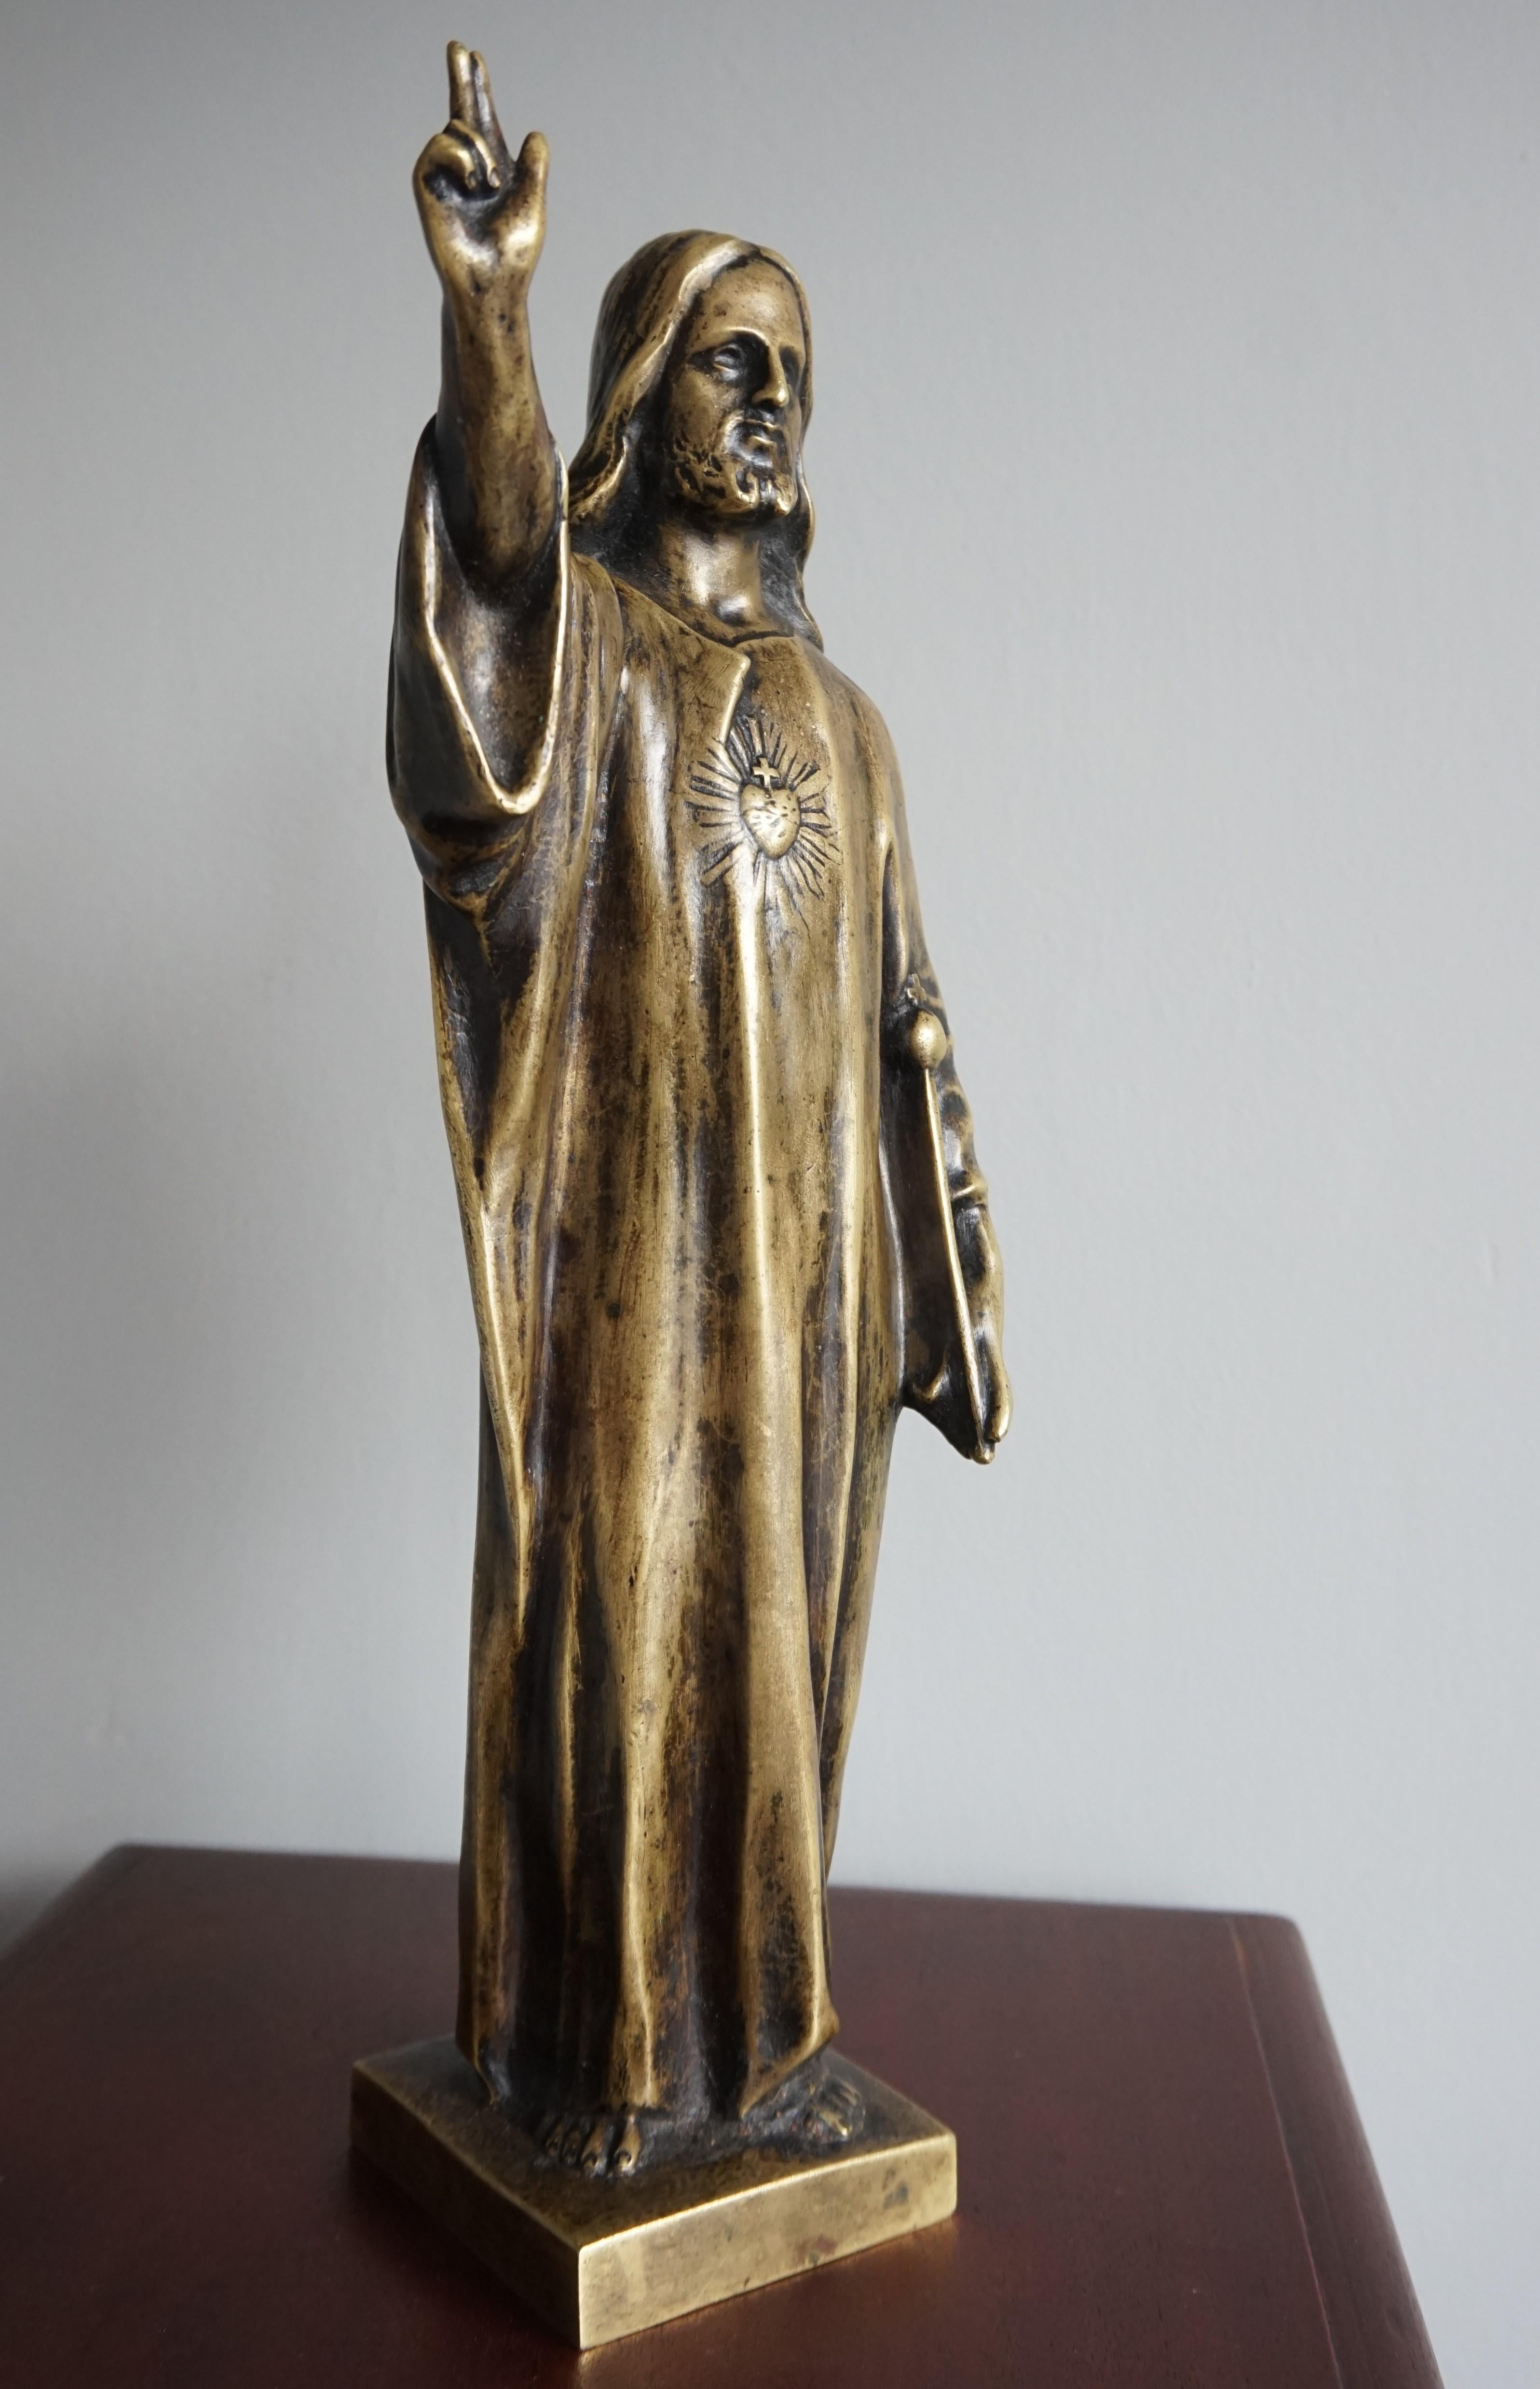 Handgefertigte Herzstatuette von Jesus von Nazareth.

Diese aussagekräftige Herz-Jesu-Skulptur ist aus Bronze und nur aus Bronze gefertigt. Alles ist in den ersten Jahren des 20. Jahrhunderts von Hand gefertigt worden und hat im Laufe der Jahrzehnte